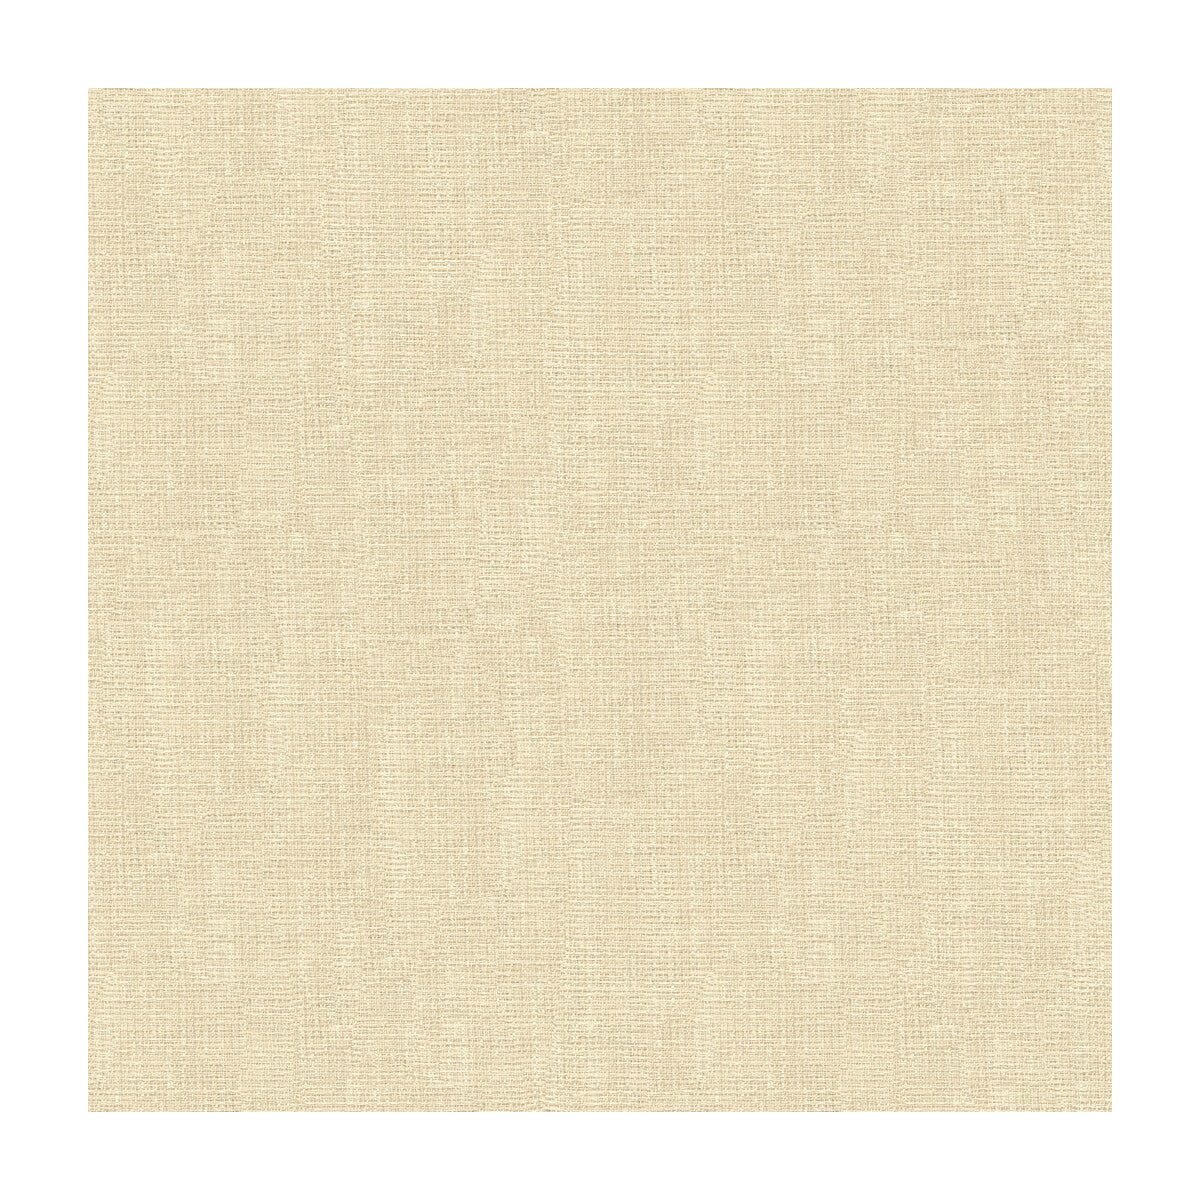 Kravet Basics fabric in 4118-1 color - pattern 4118.1.0 - by Kravet Basics